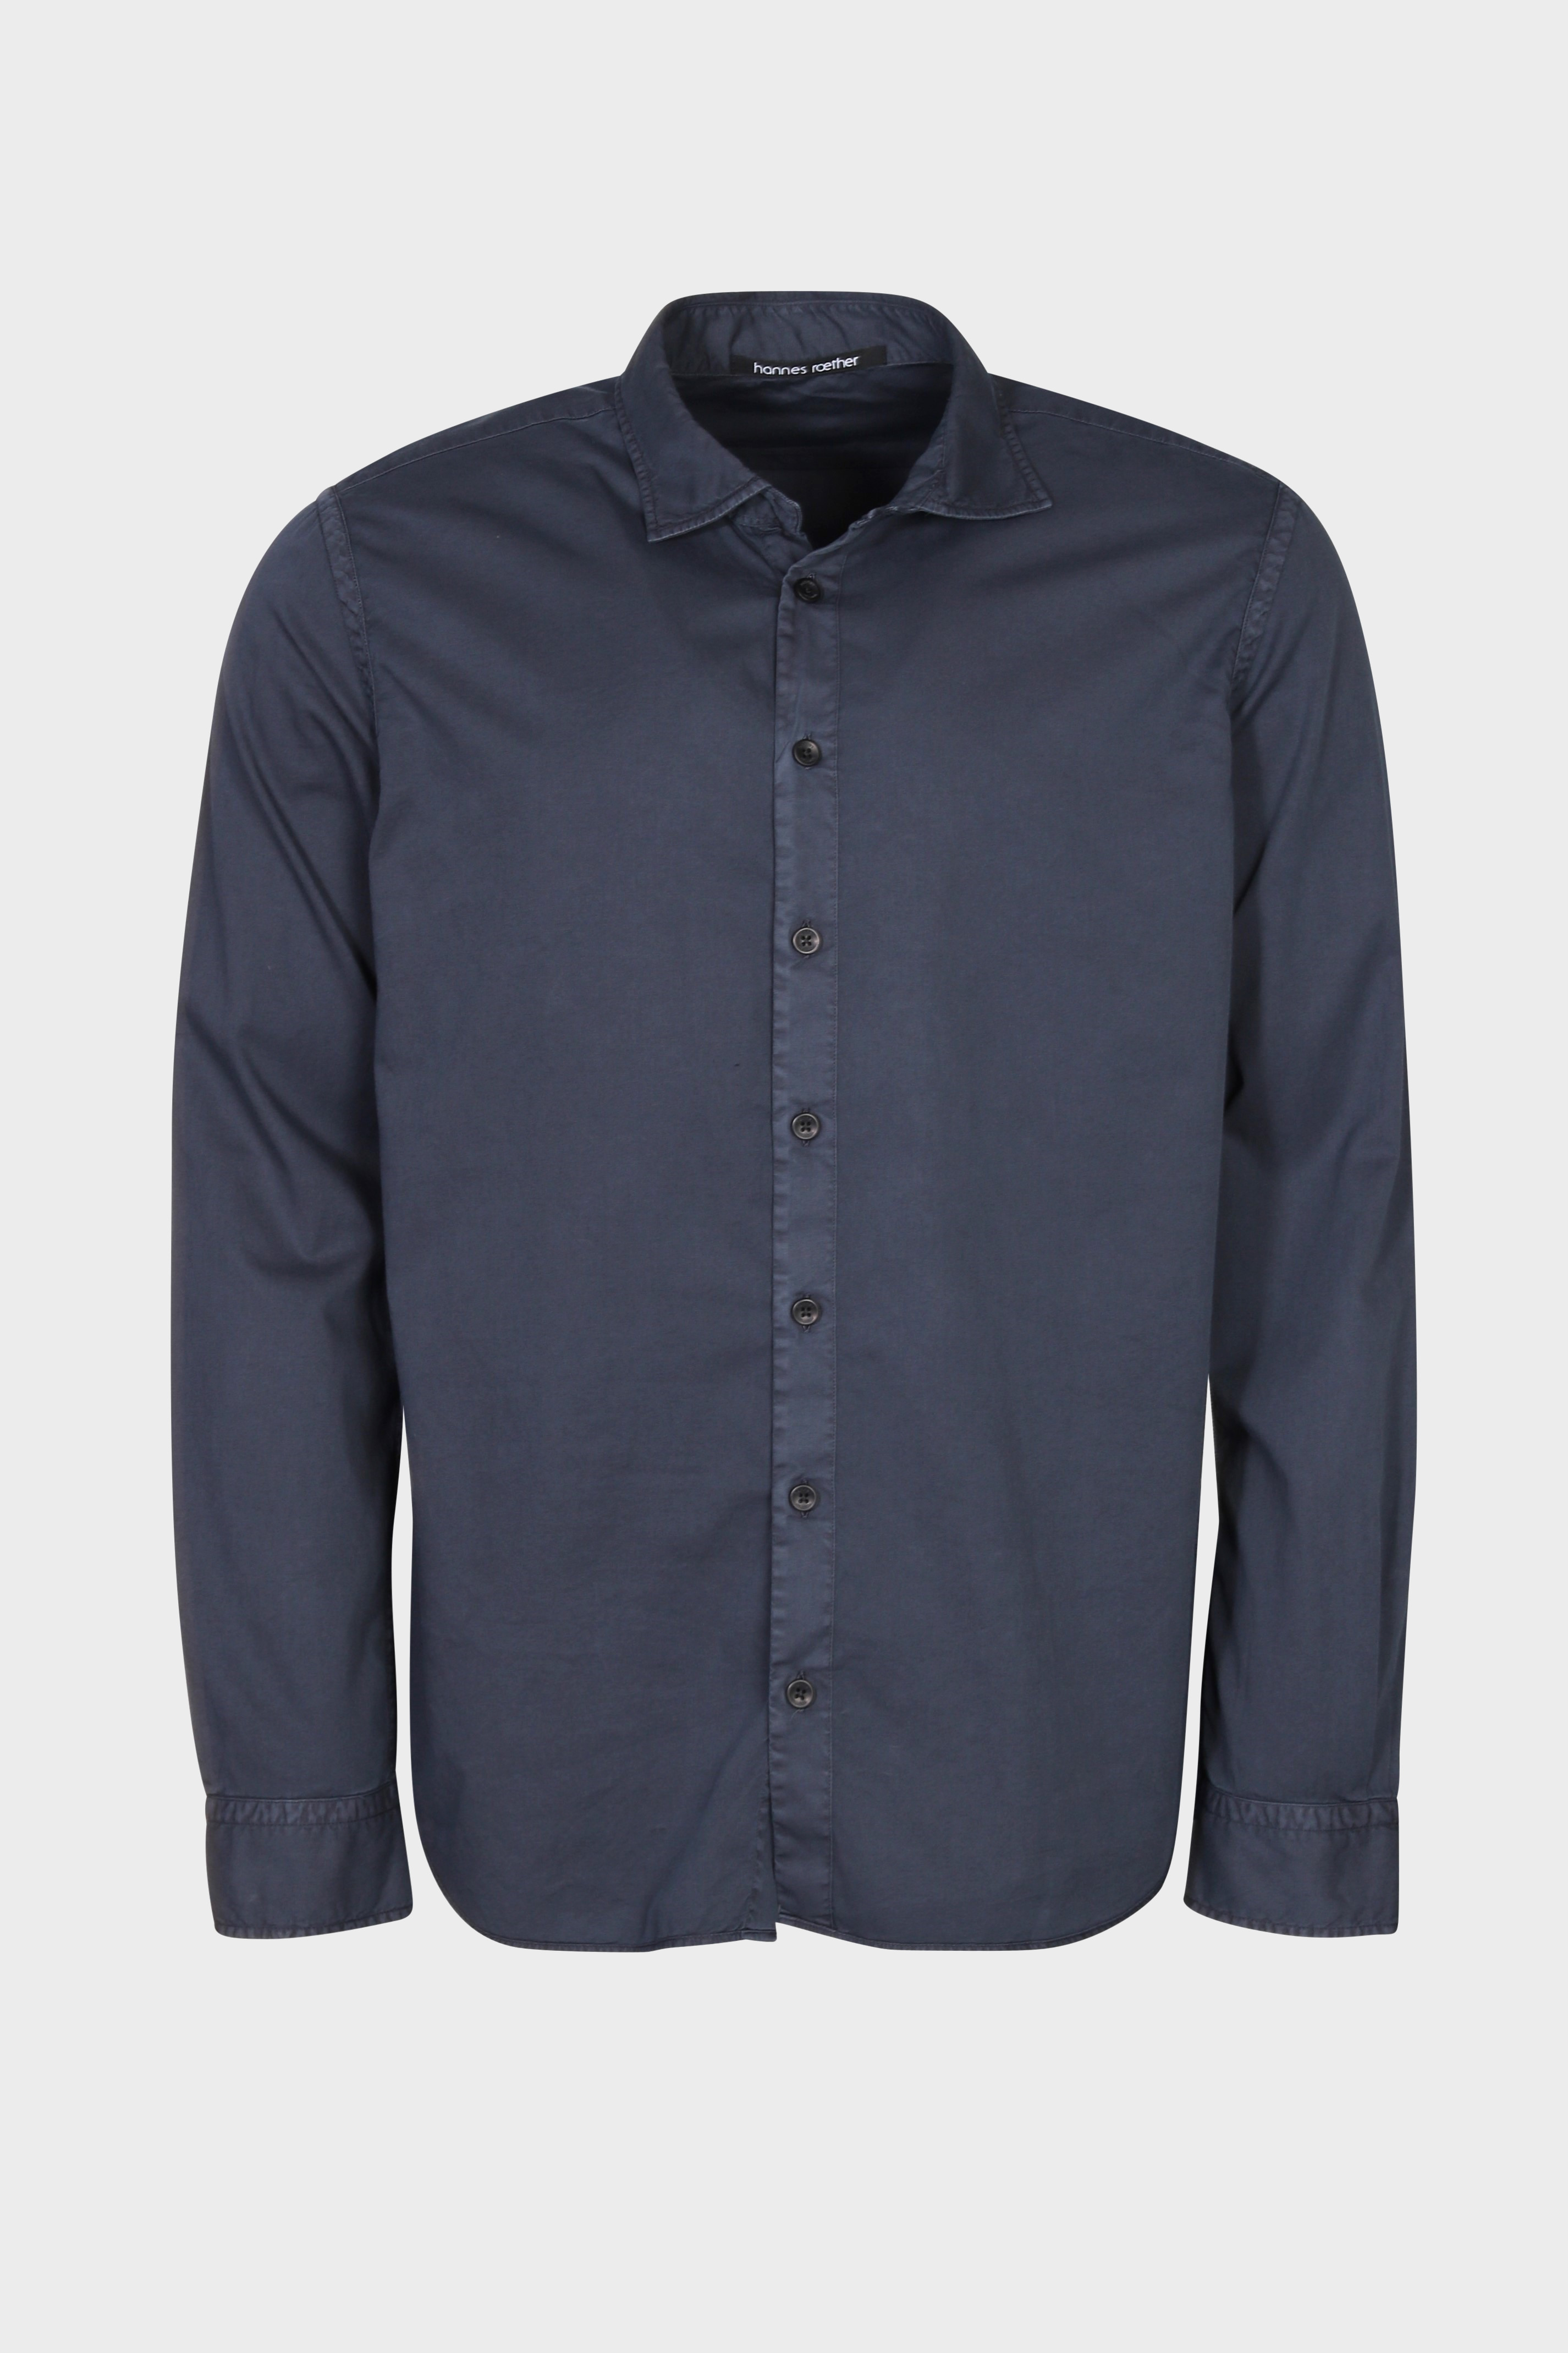 HANNES ROETHER Cotton Shirt in Dark Blue M